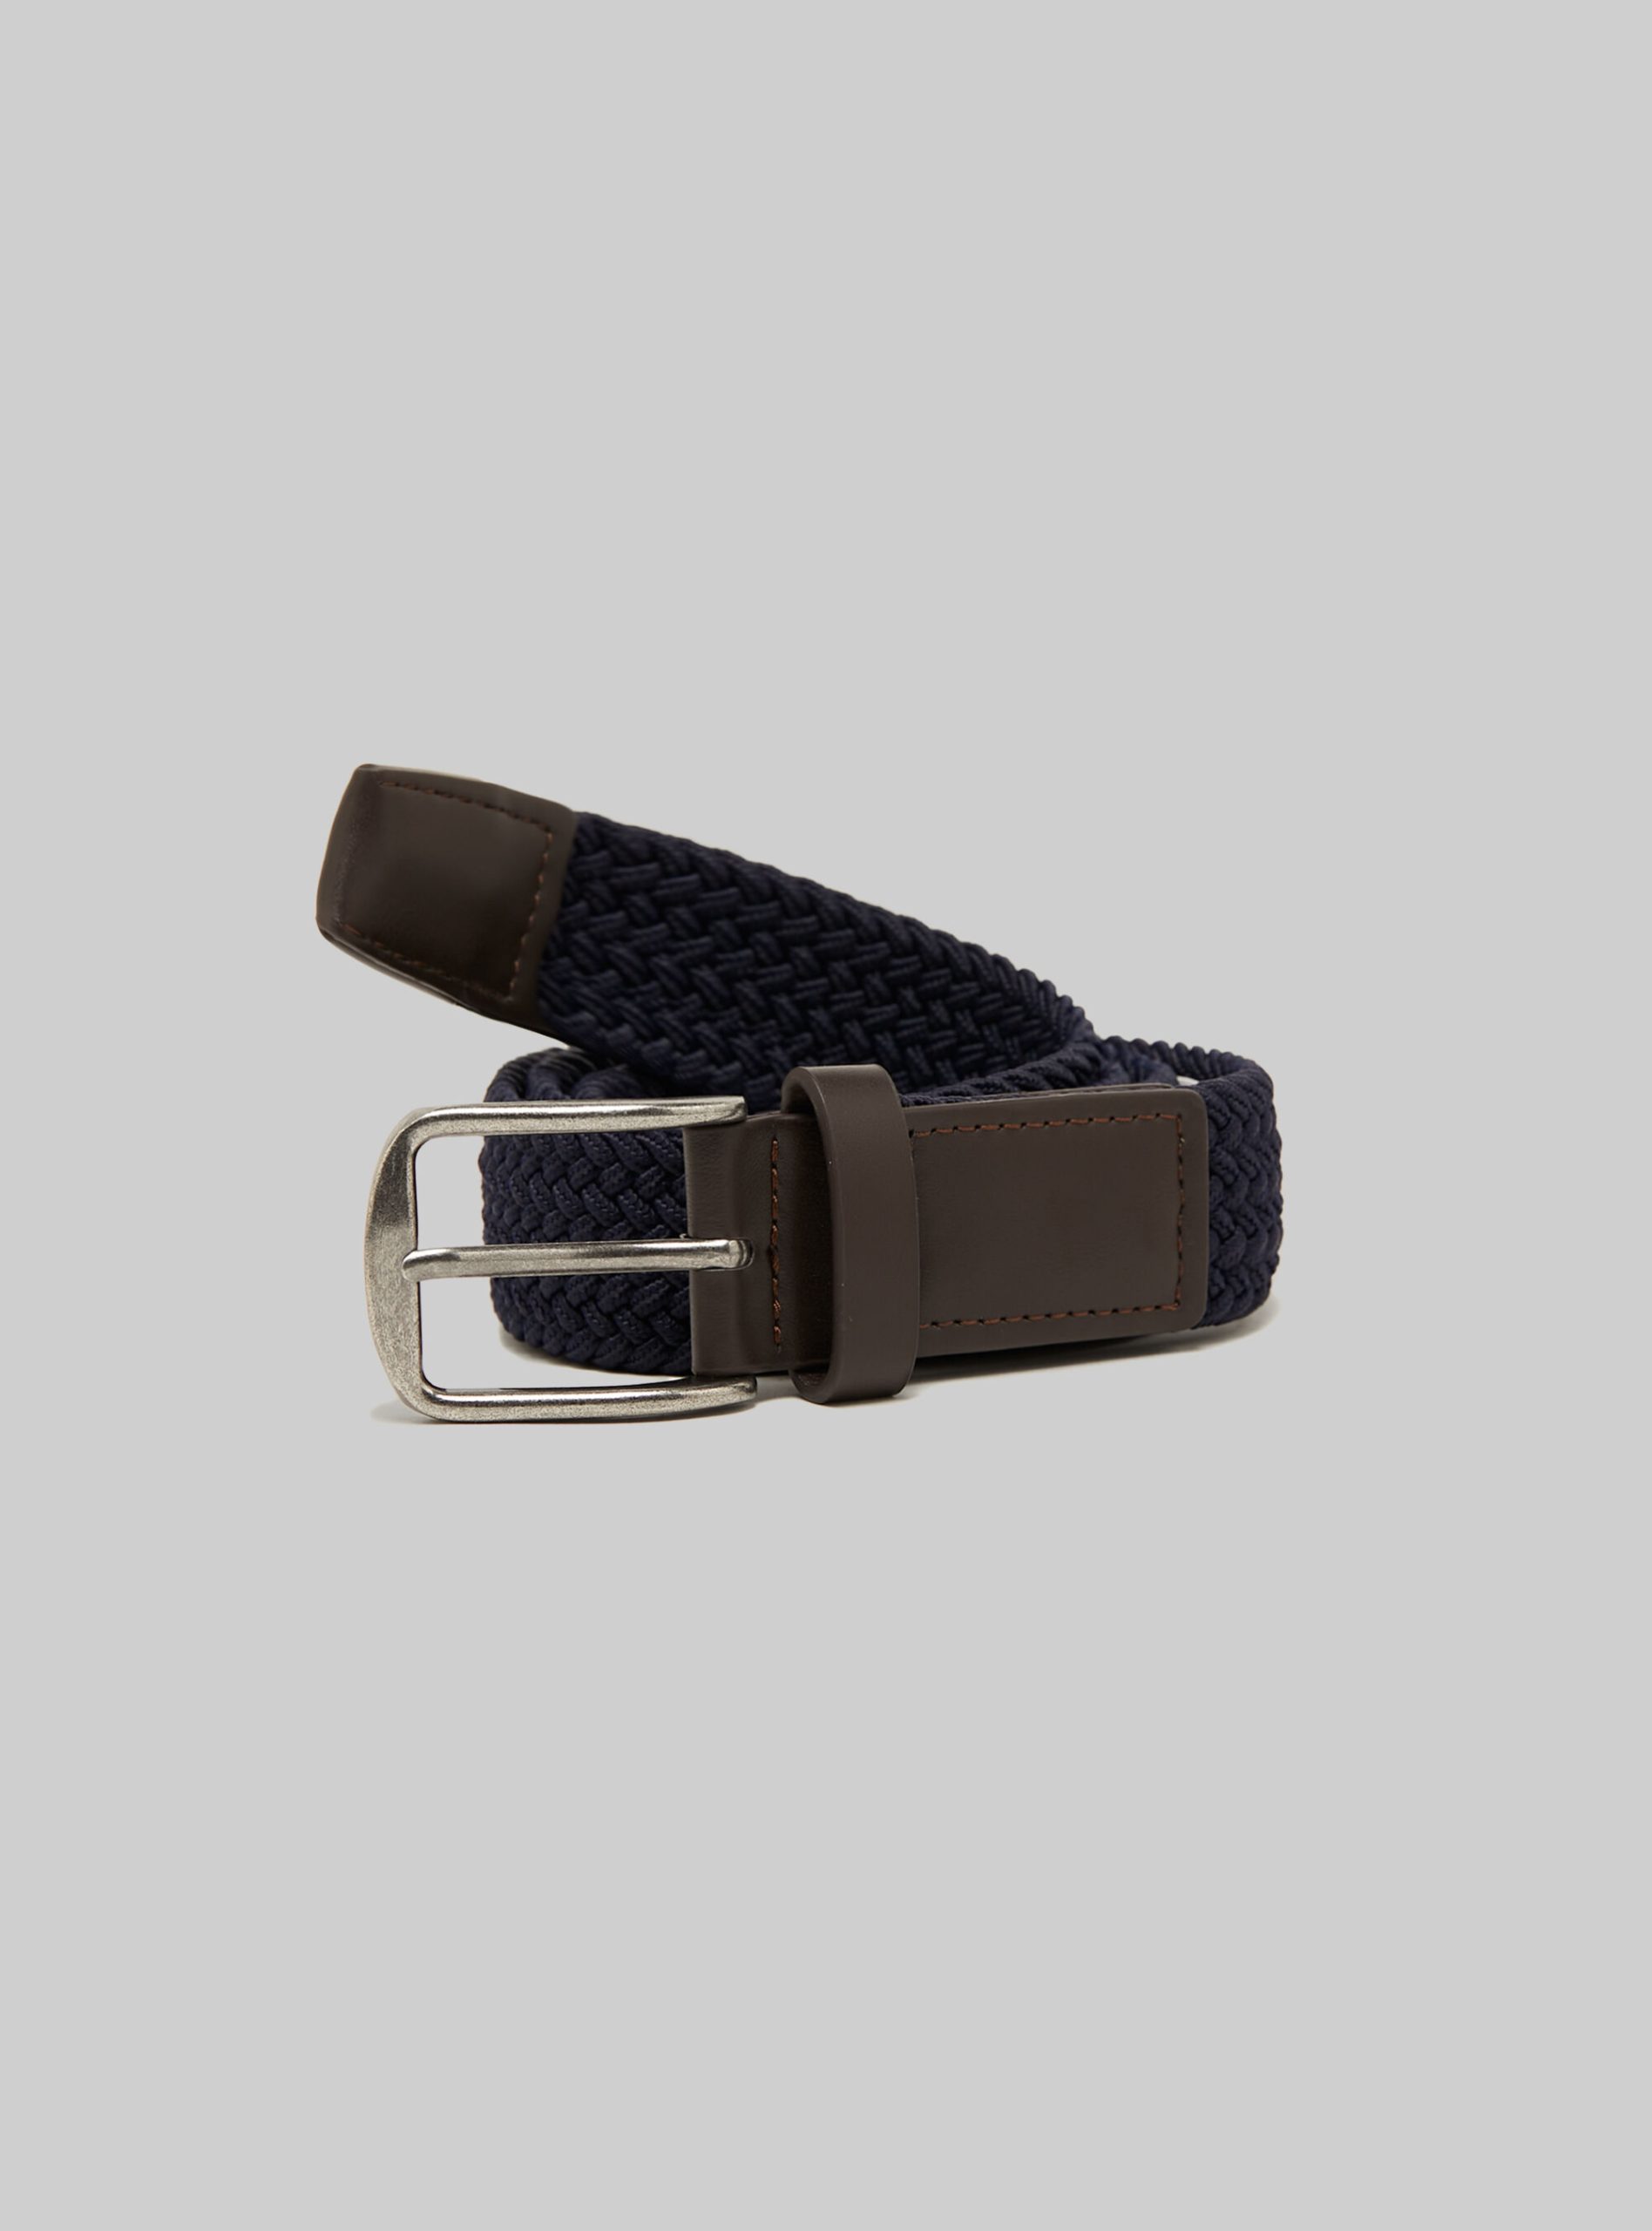 Männer Bestellung Alcott Na1 Navy Dark Braided Belt With Rectangular Buckle Gürtel – 1